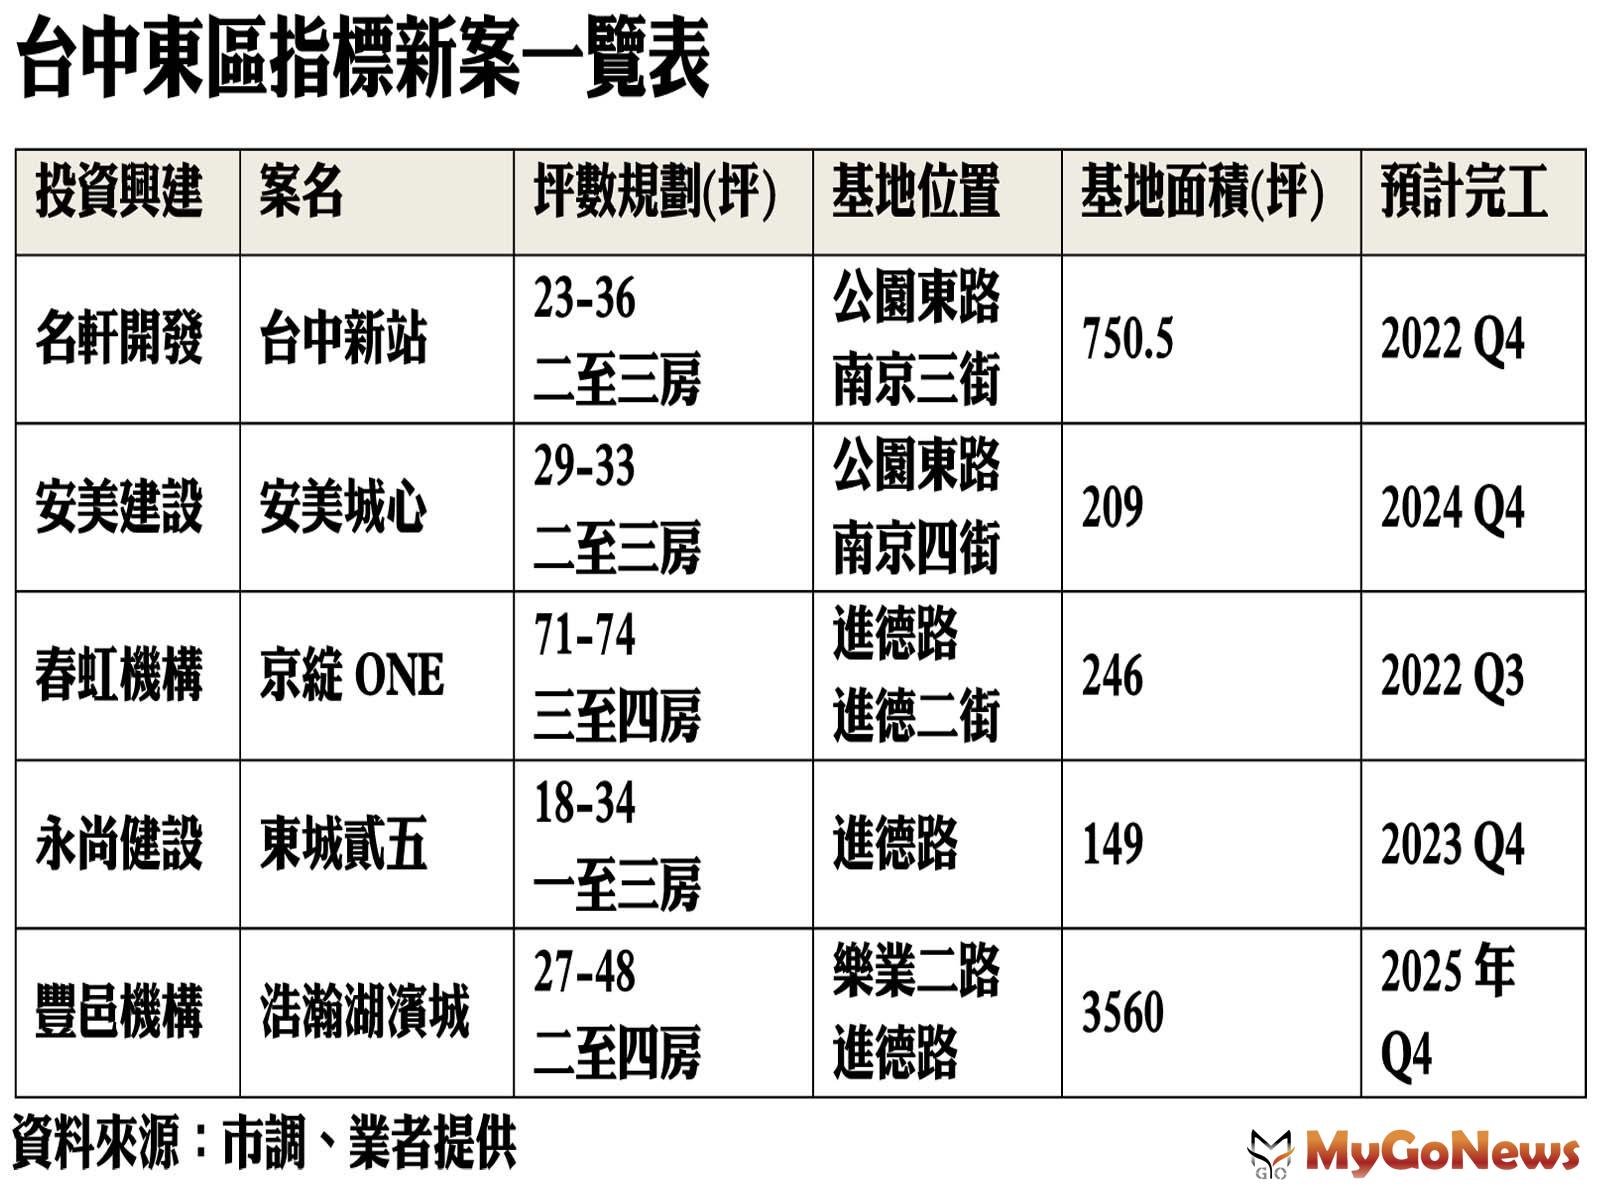 台中東區指標新案一覽表 MyGoNews房地產新聞 市場快訊